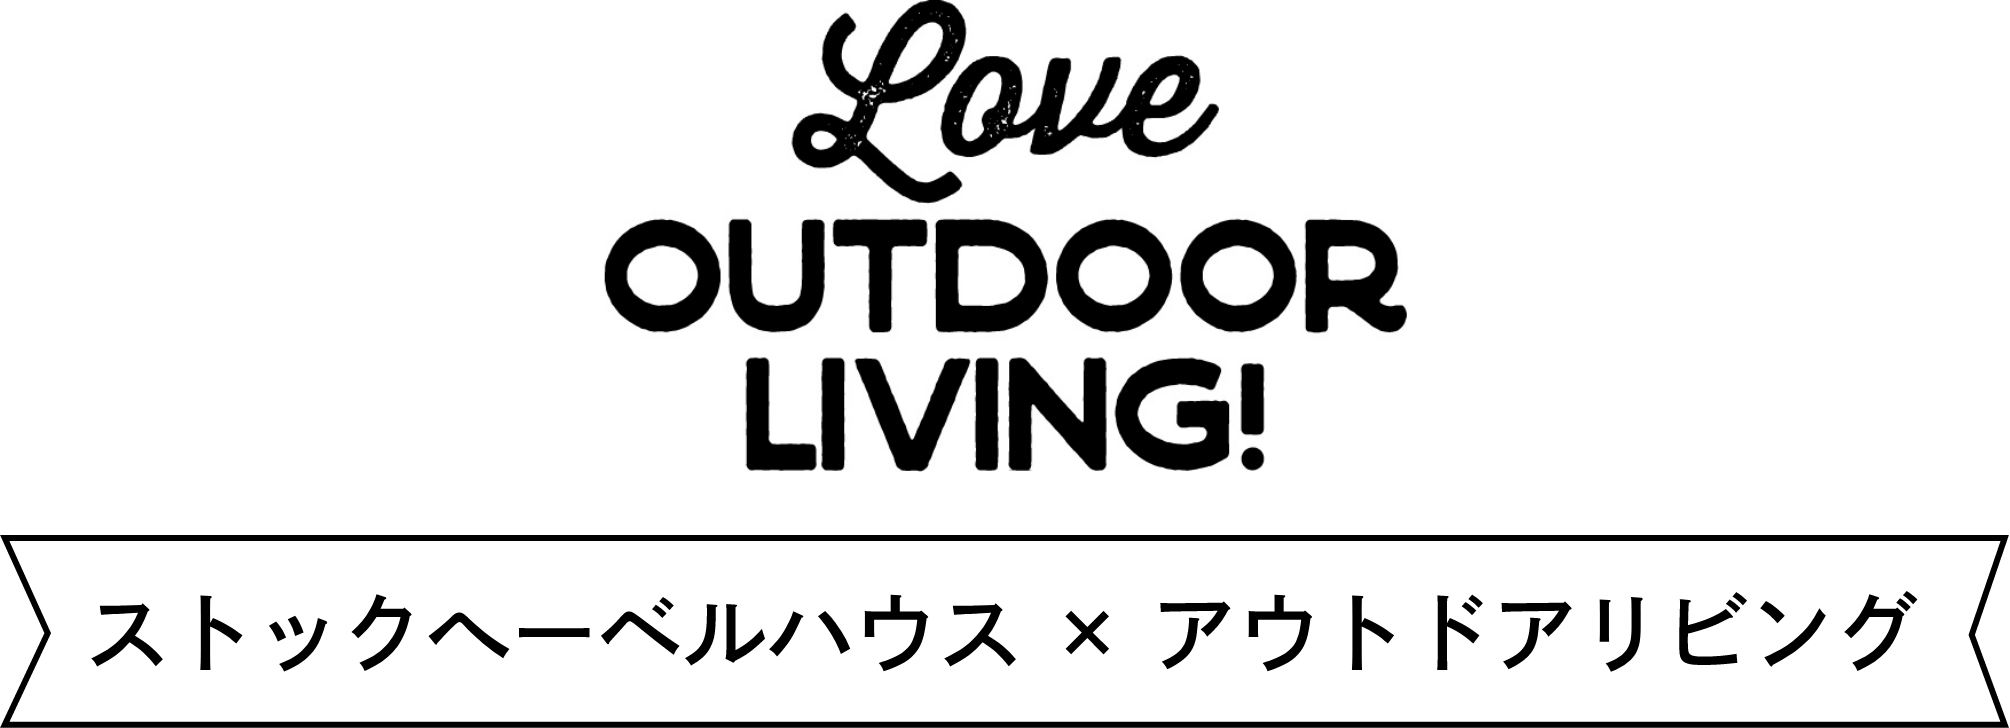 Love outdoor living